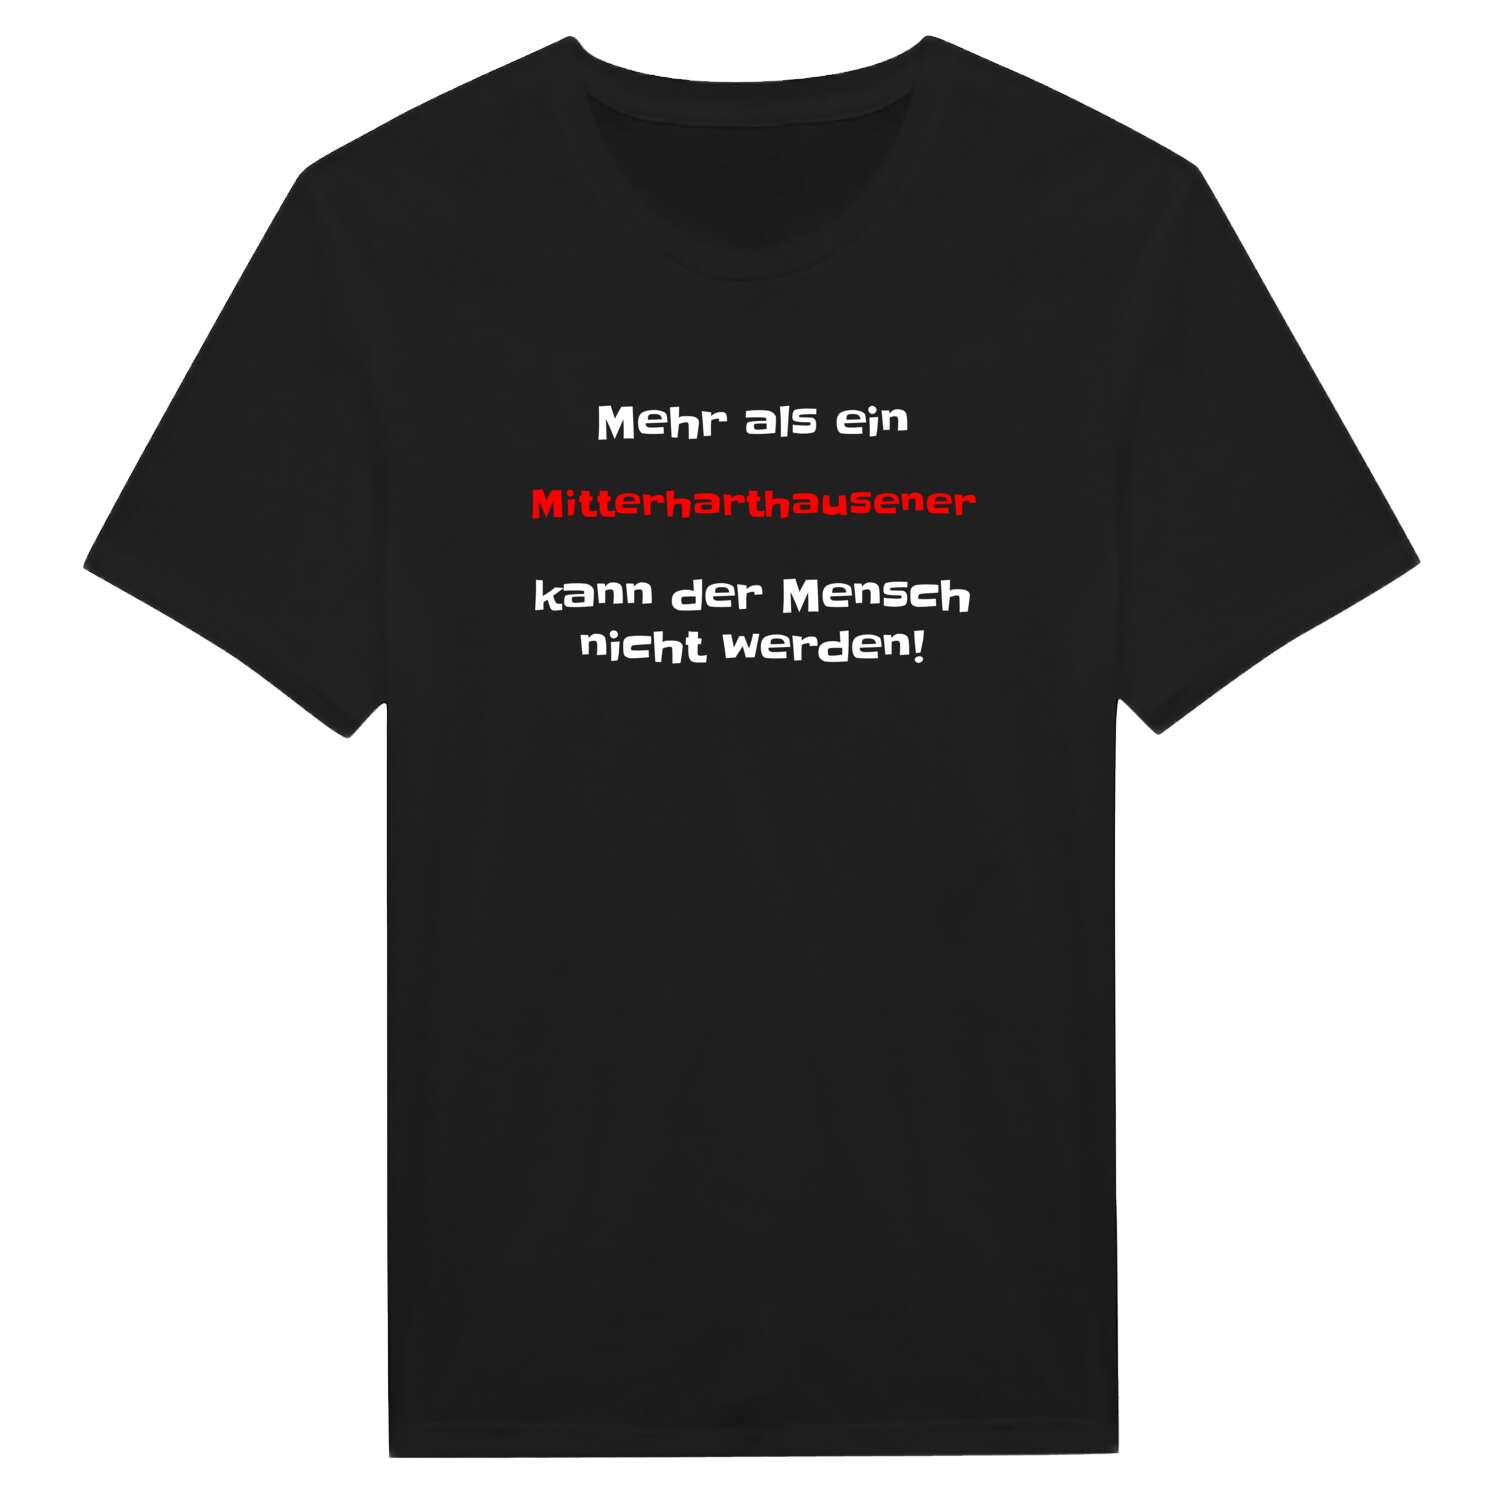 Mitterharthausen T-Shirt »Mehr als ein«